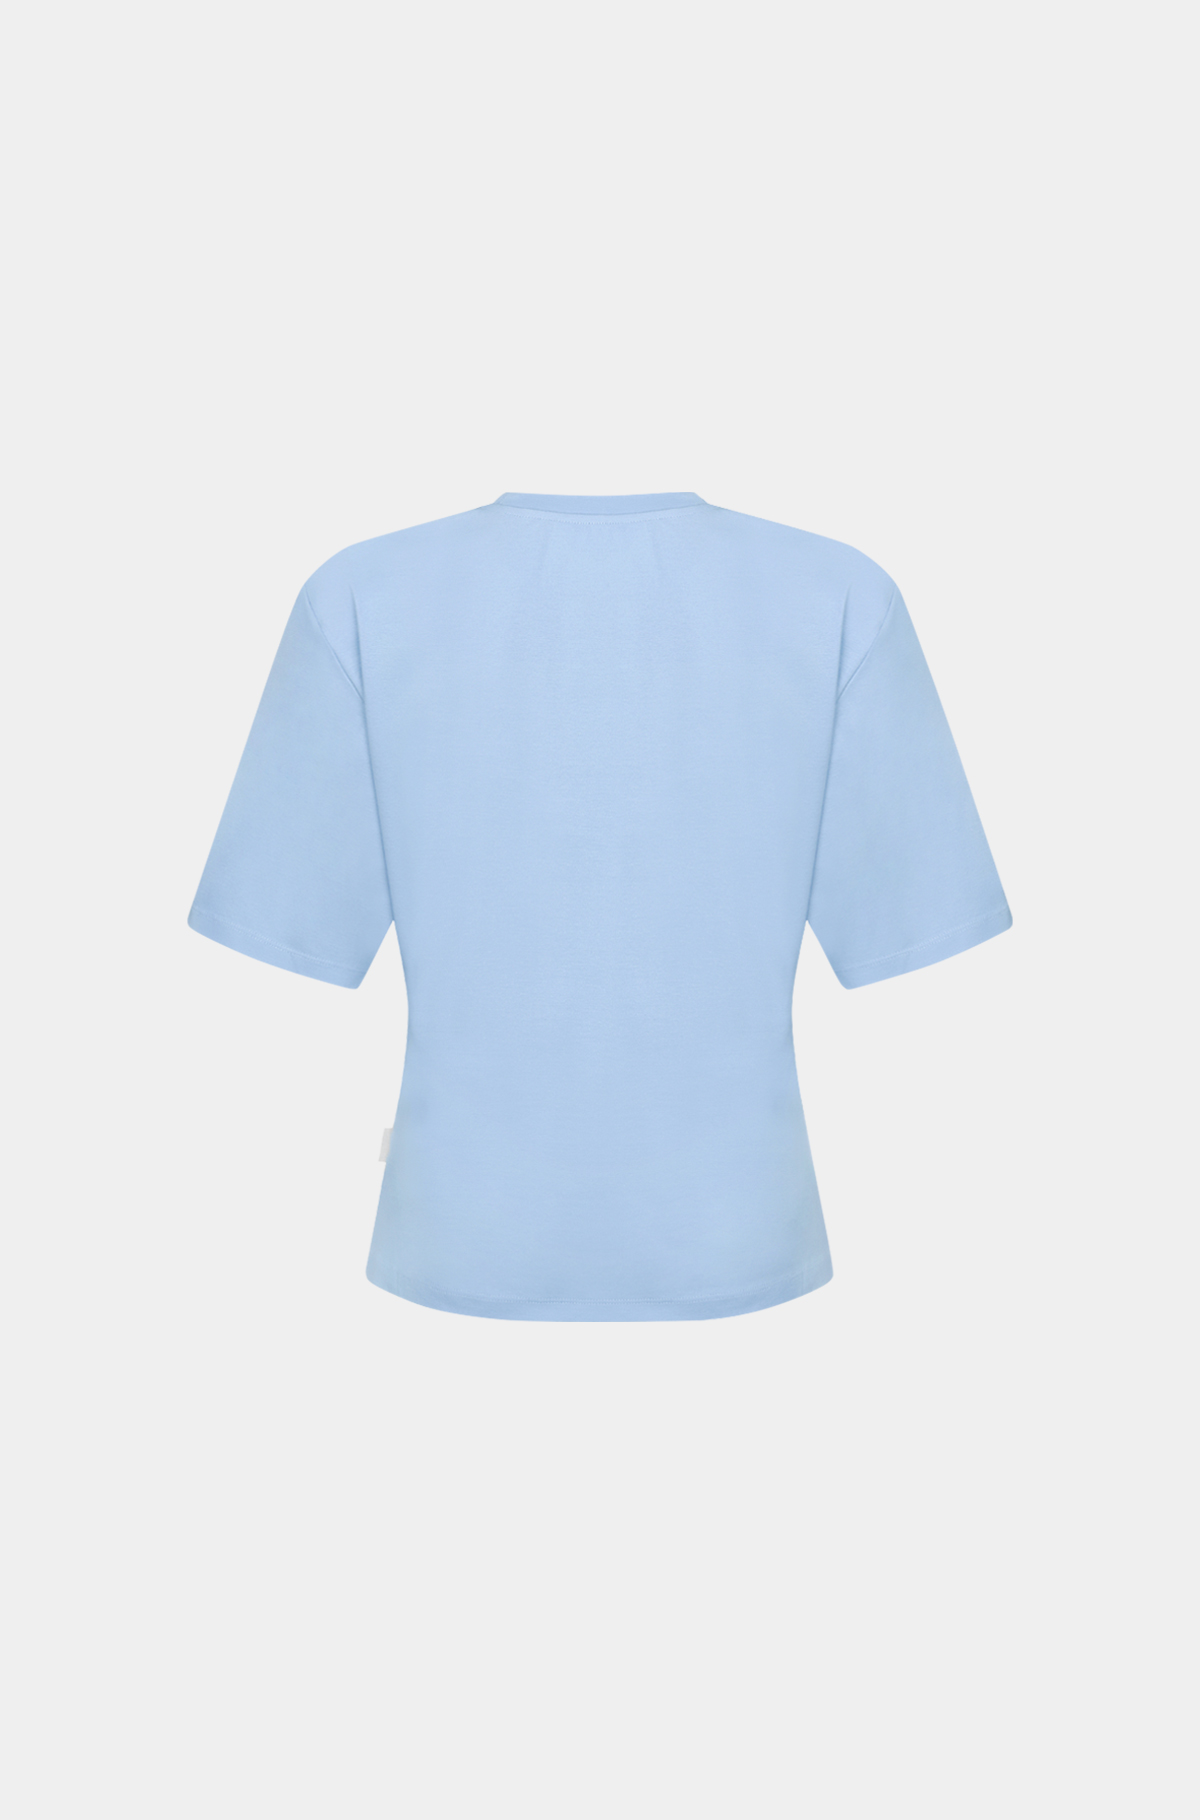 클린 슬림 티셔츠 - 위스피 블루